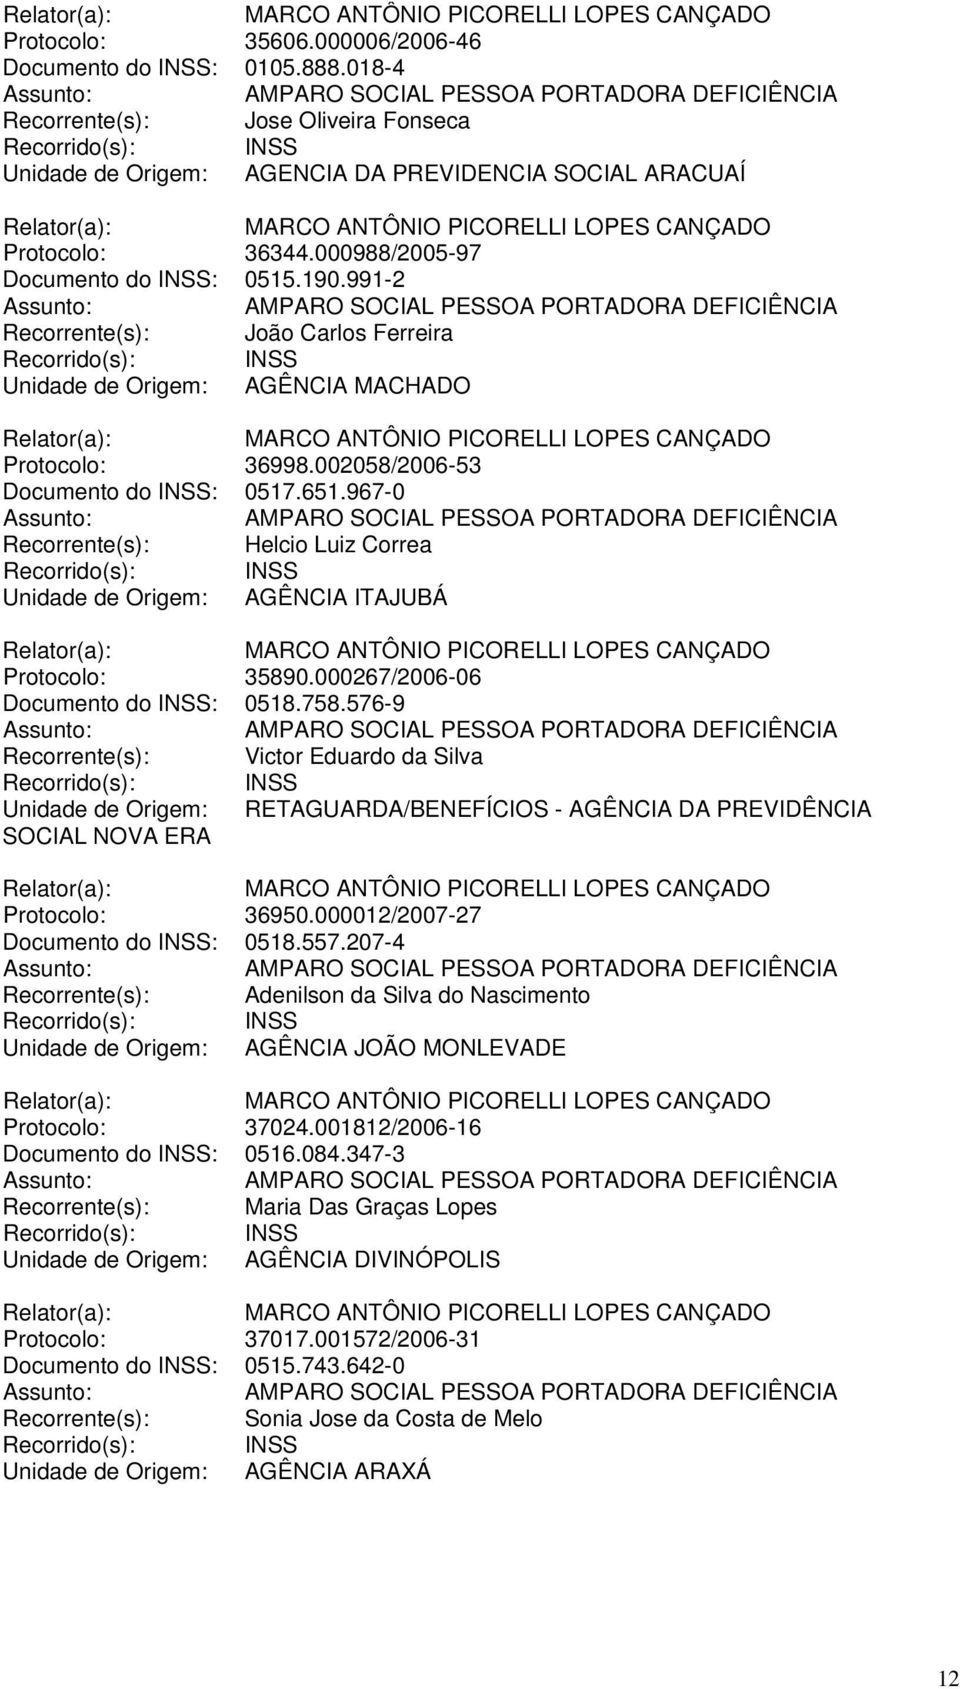 967-0 Recorrente(s): Helcio Luiz Correa Unidade de Origem: AGÊNCIA ITAJUBÁ Protocolo: 35890.000267/2006-06 Documento do INSS: 0518.758.